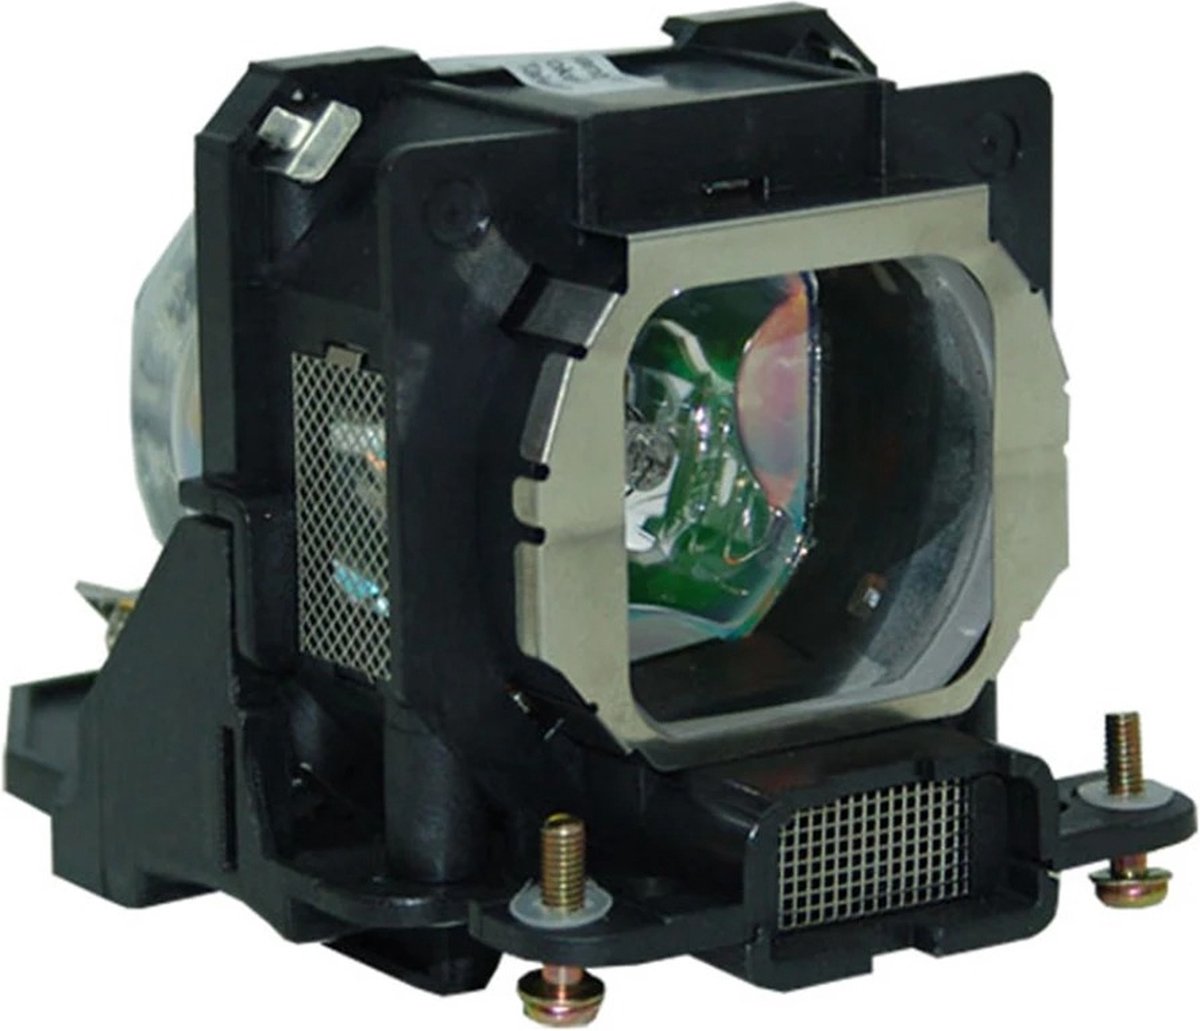 Beamerlamp geschikt voor de PANASONIC PT-AE900U beamer, lamp code ET-LAE900. Bevat originele UHP lamp, prestaties gelijk aan origineel.